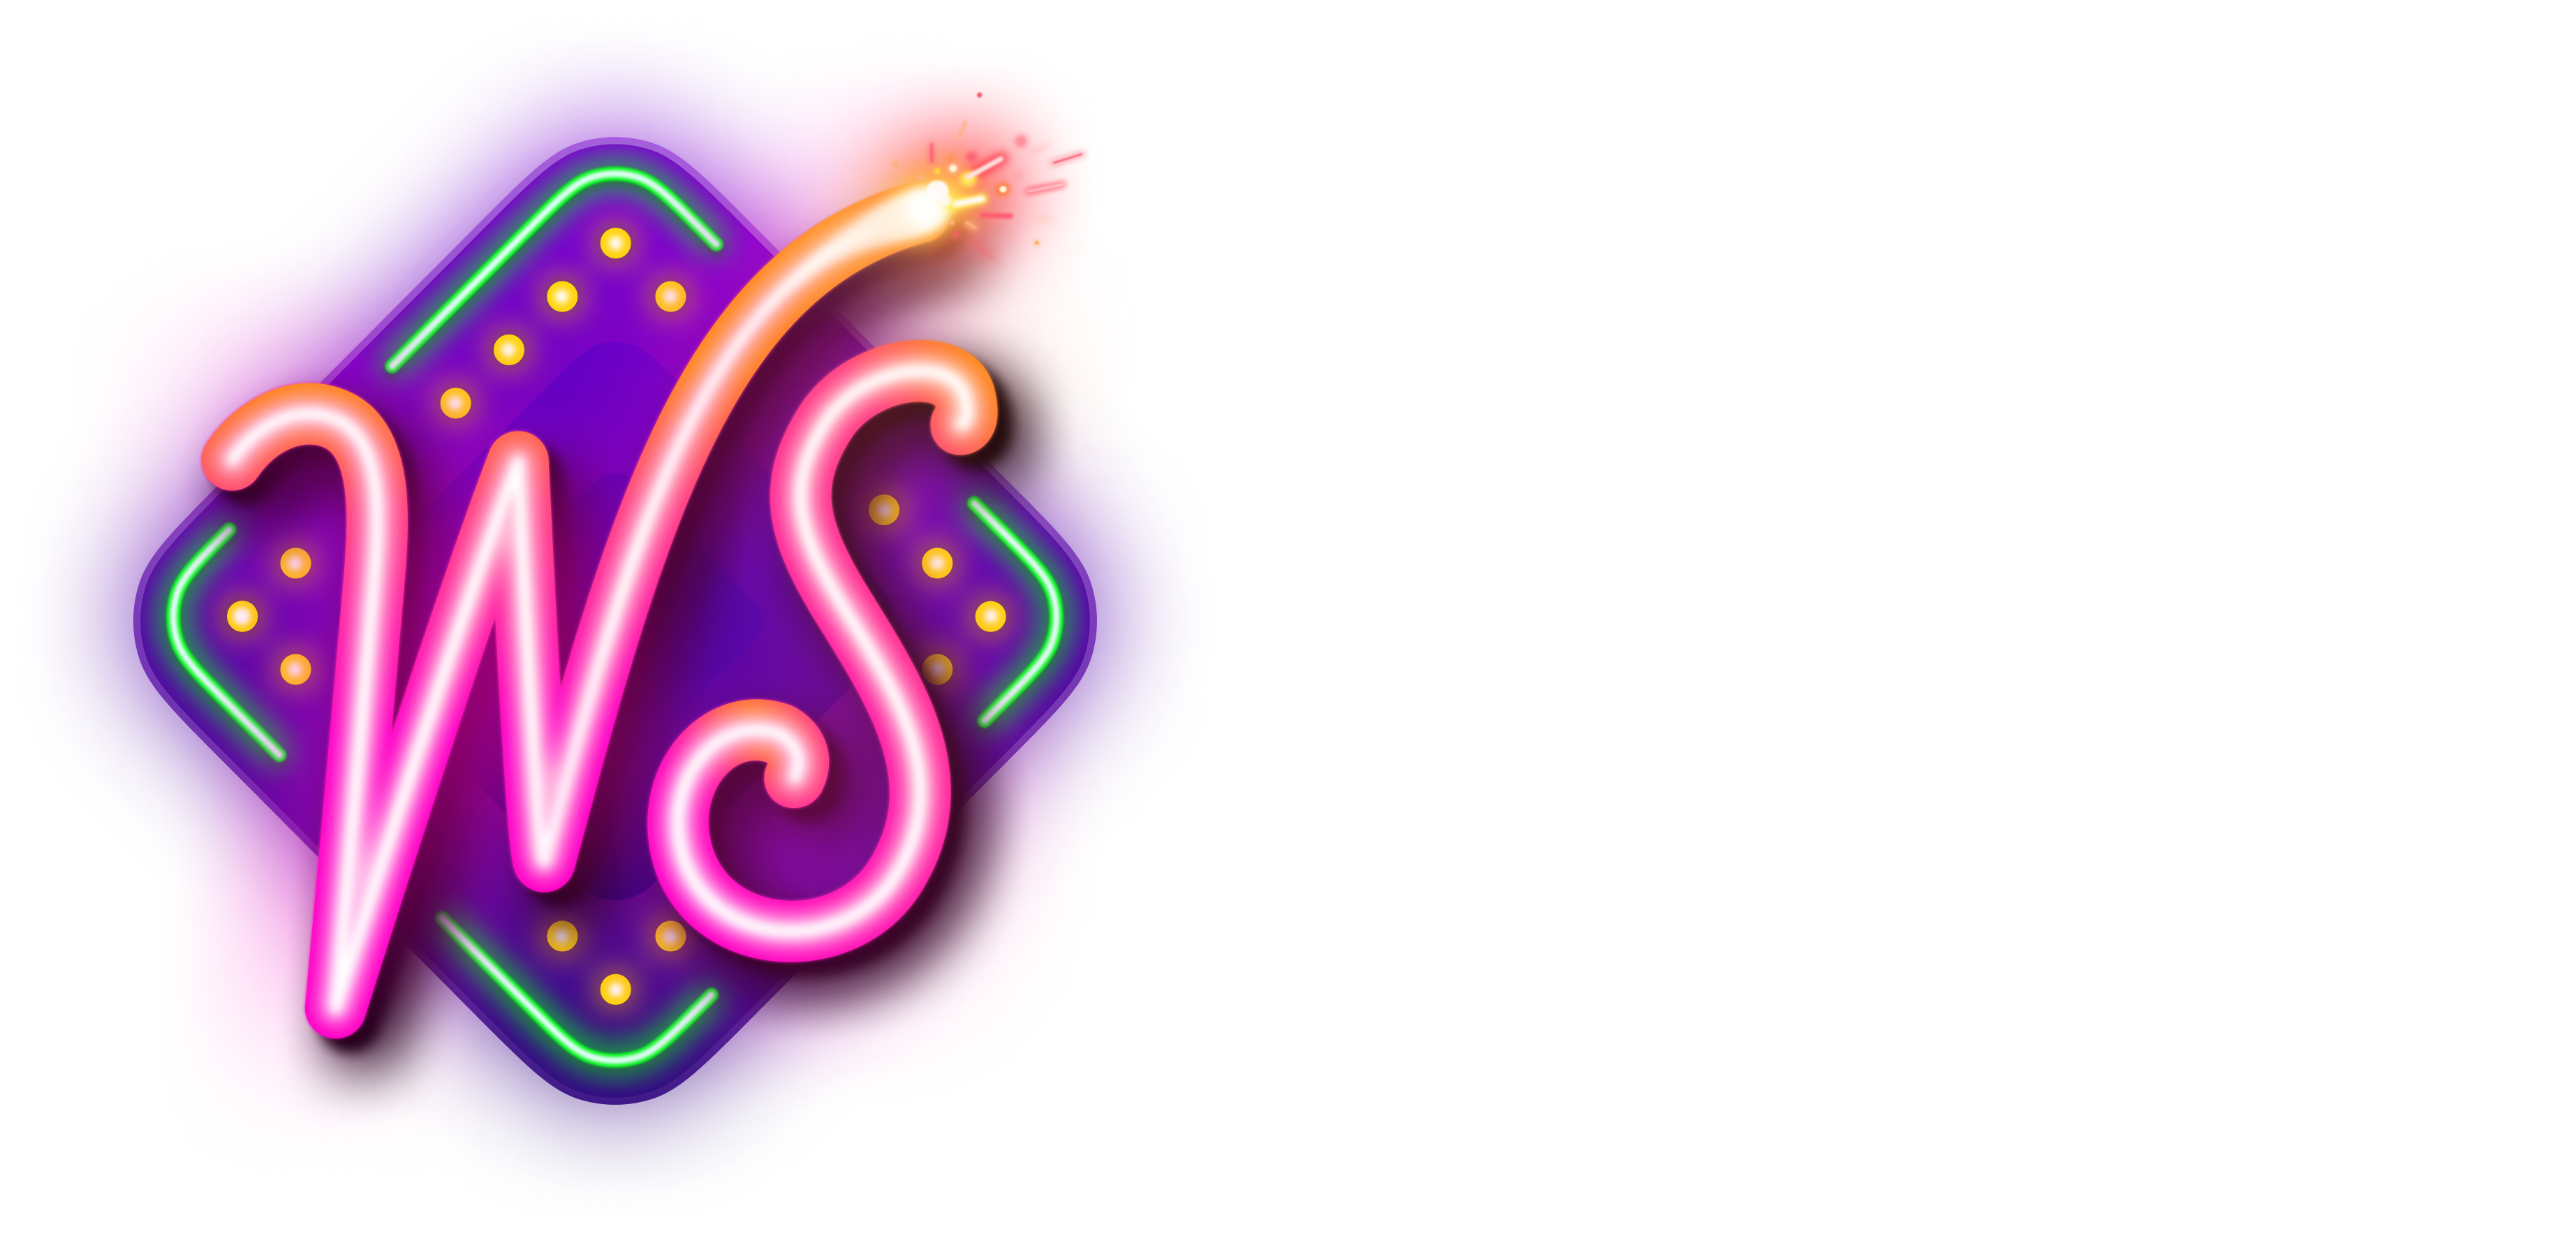 WinSpirit Casino